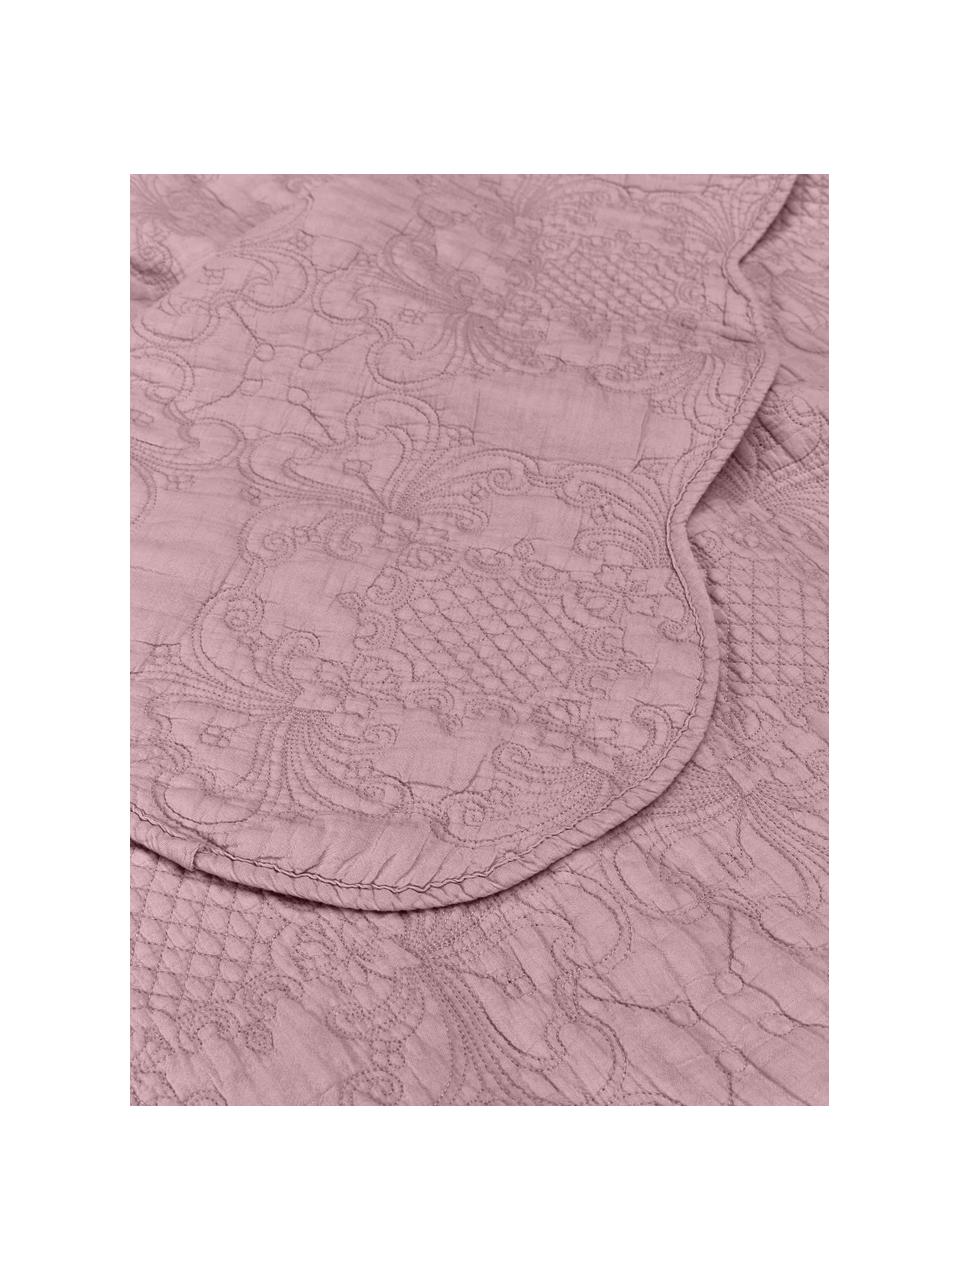 Bestickte Tagesdecke Madlon aus Baumwolle in Lila, Bezug: 100% Baumwolle, Lila, B 180 x L 250 cm (für Betten bis 140 x 200 cm)